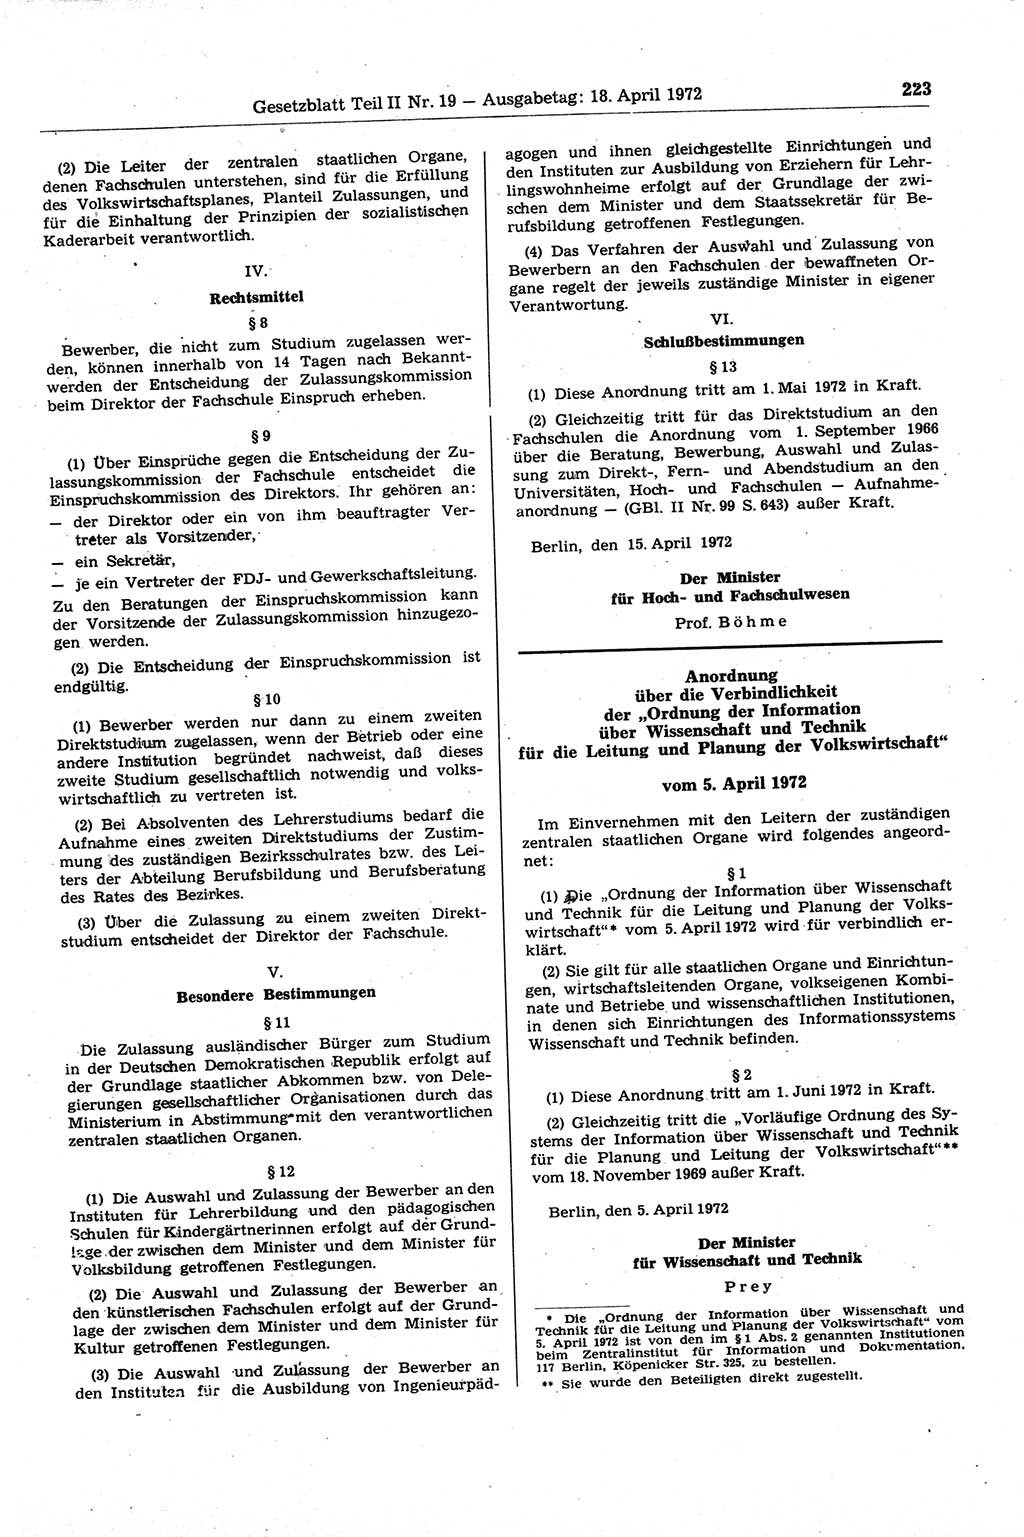 Gesetzblatt (GBl.) der Deutschen Demokratischen Republik (DDR) Teil ⅠⅠ 1972, Seite 223 (GBl. DDR ⅠⅠ 1972, S. 223)